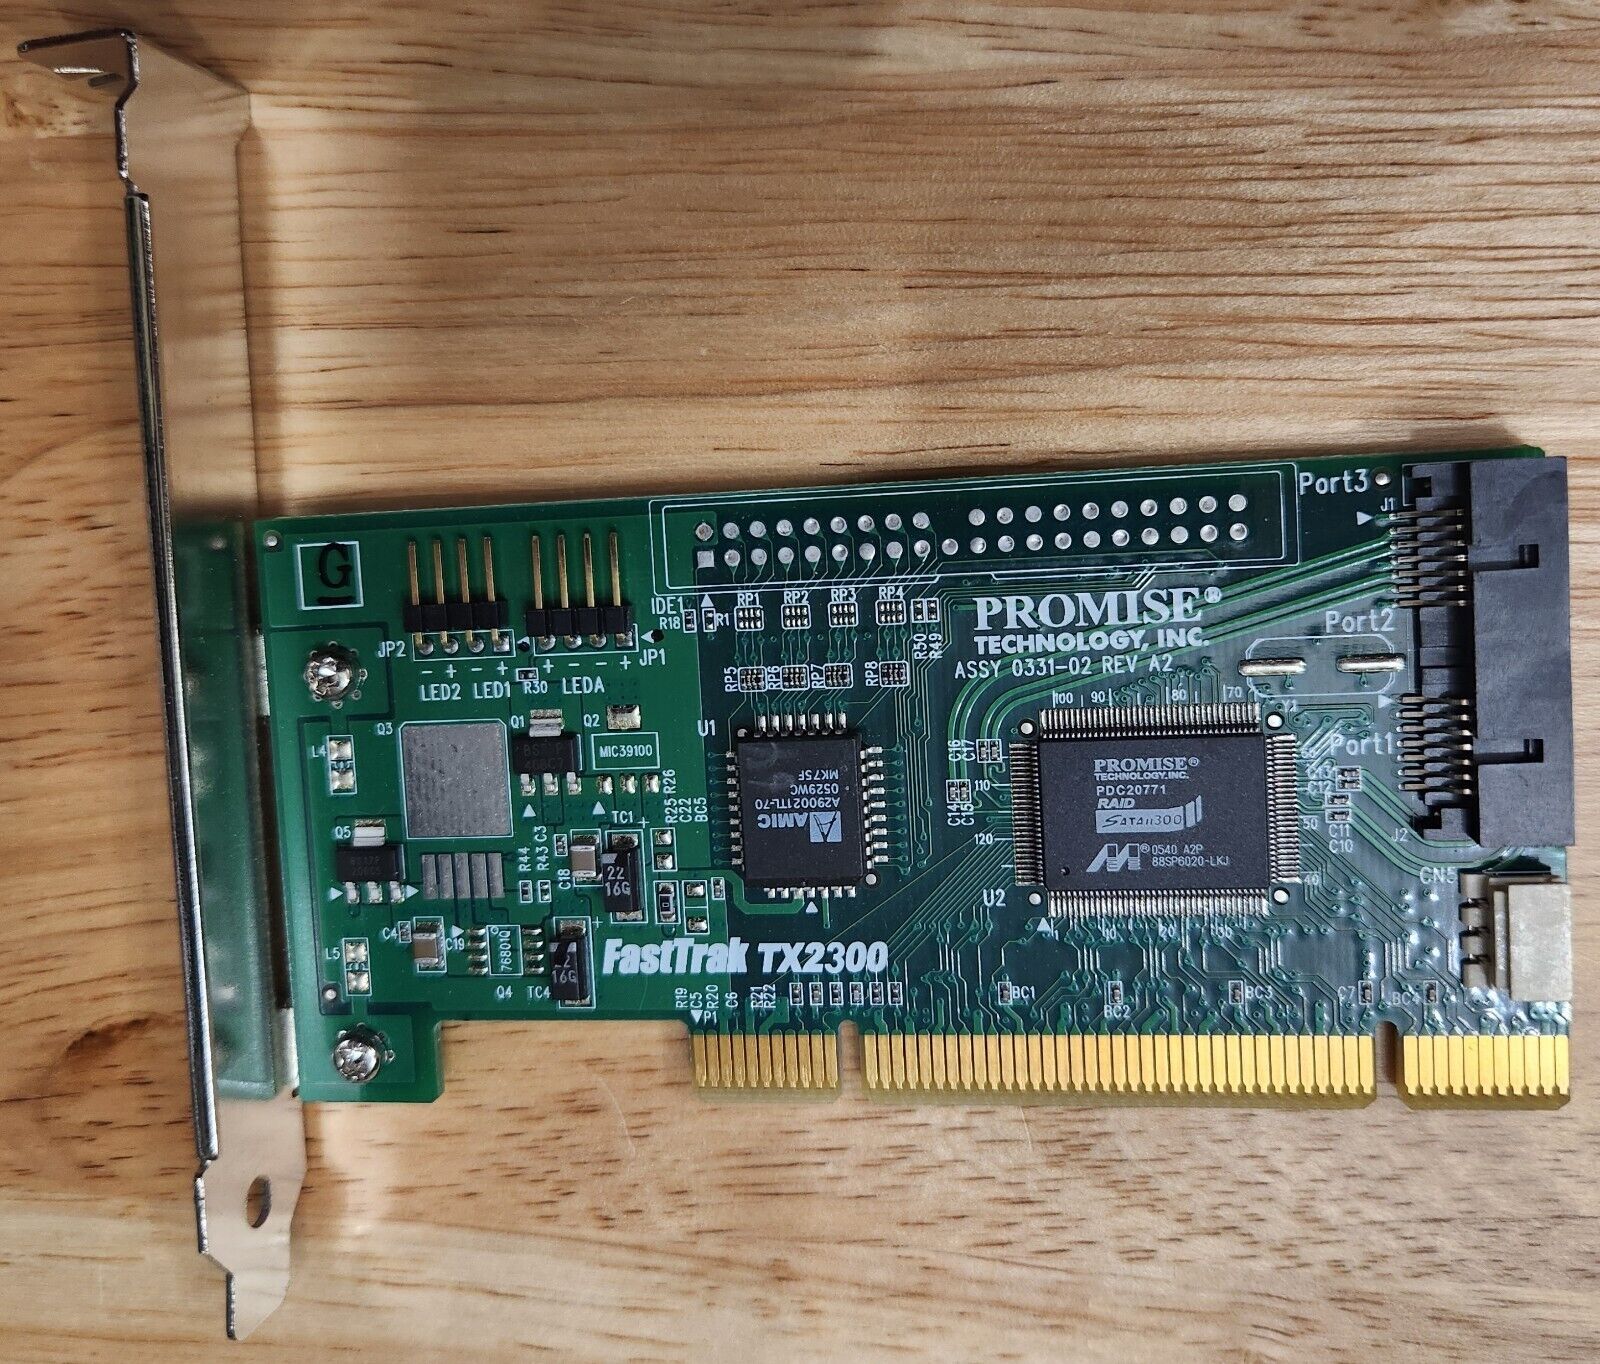 Promise Fasttrak Tx2300 SATA RAID PCI Card